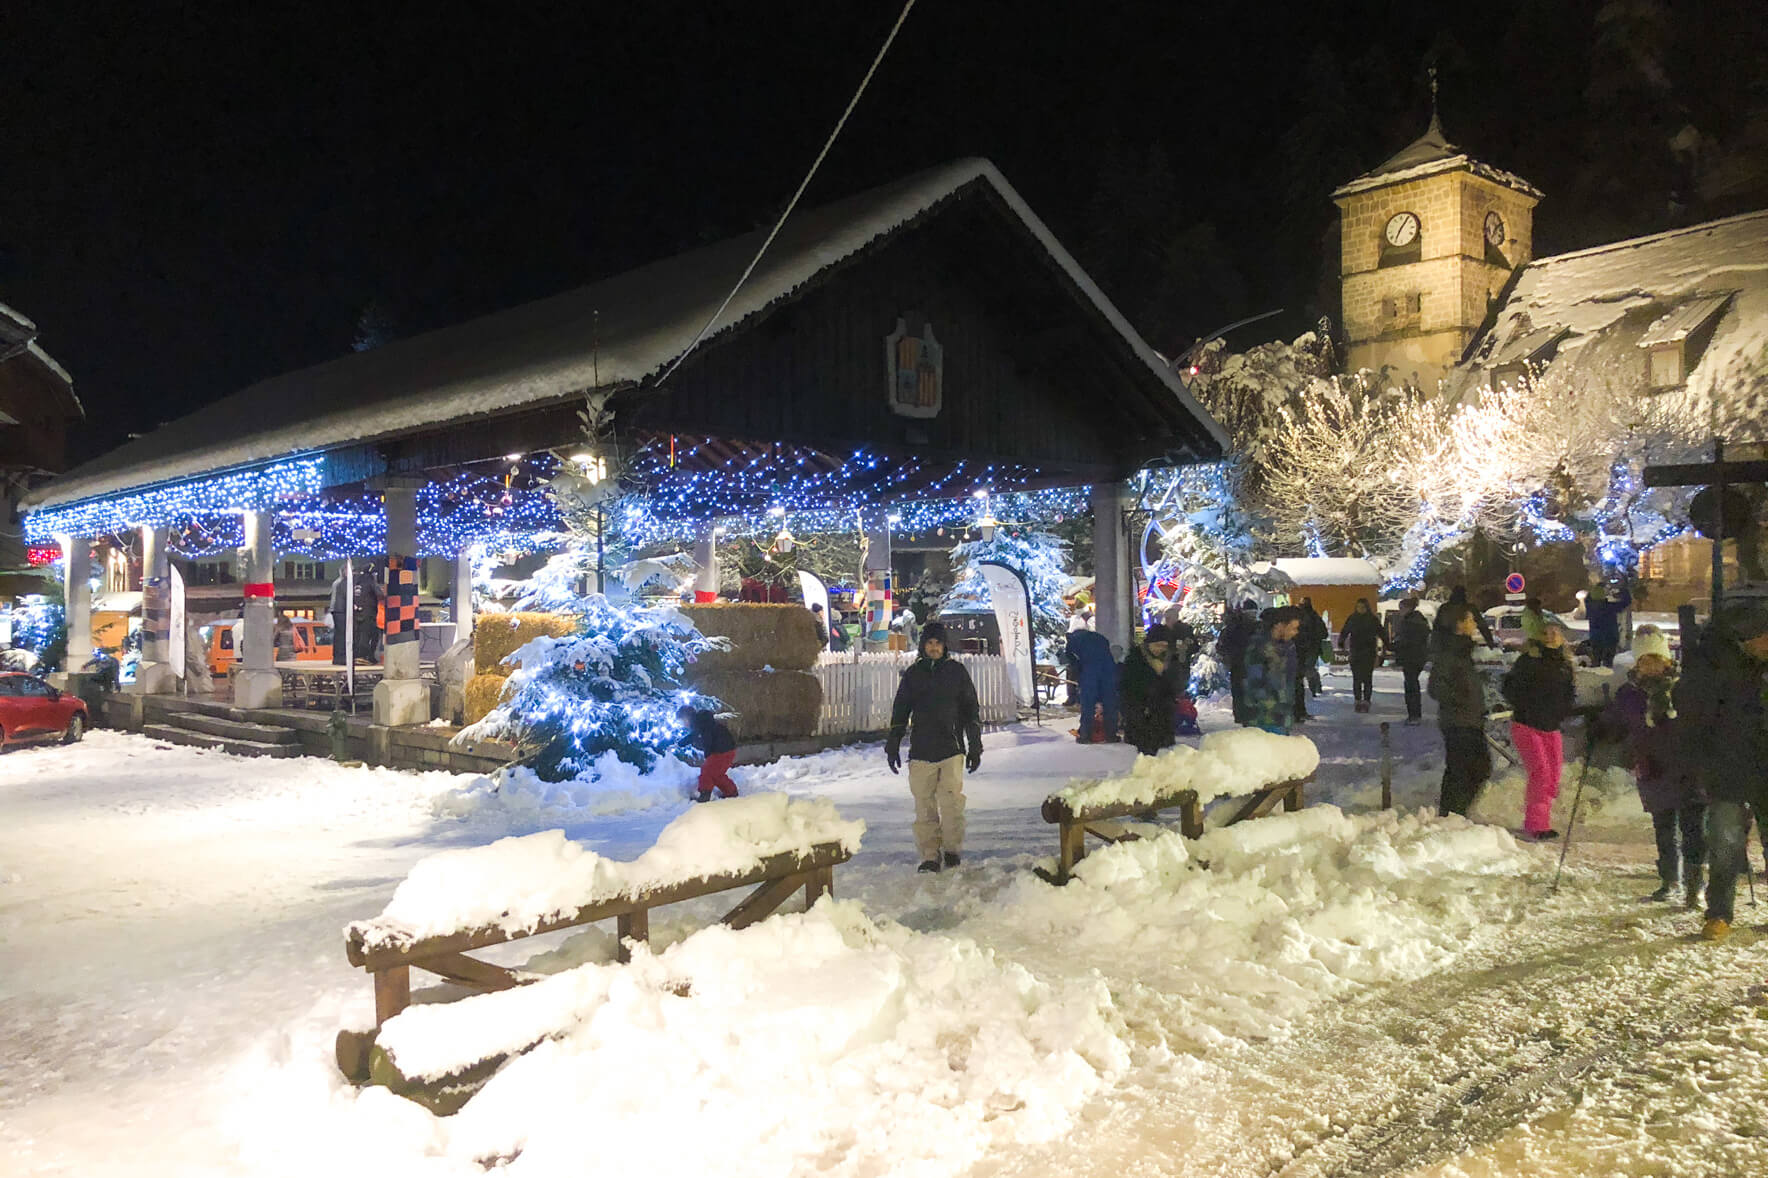 Christmas In Samoens Under A Blanket Of Snow